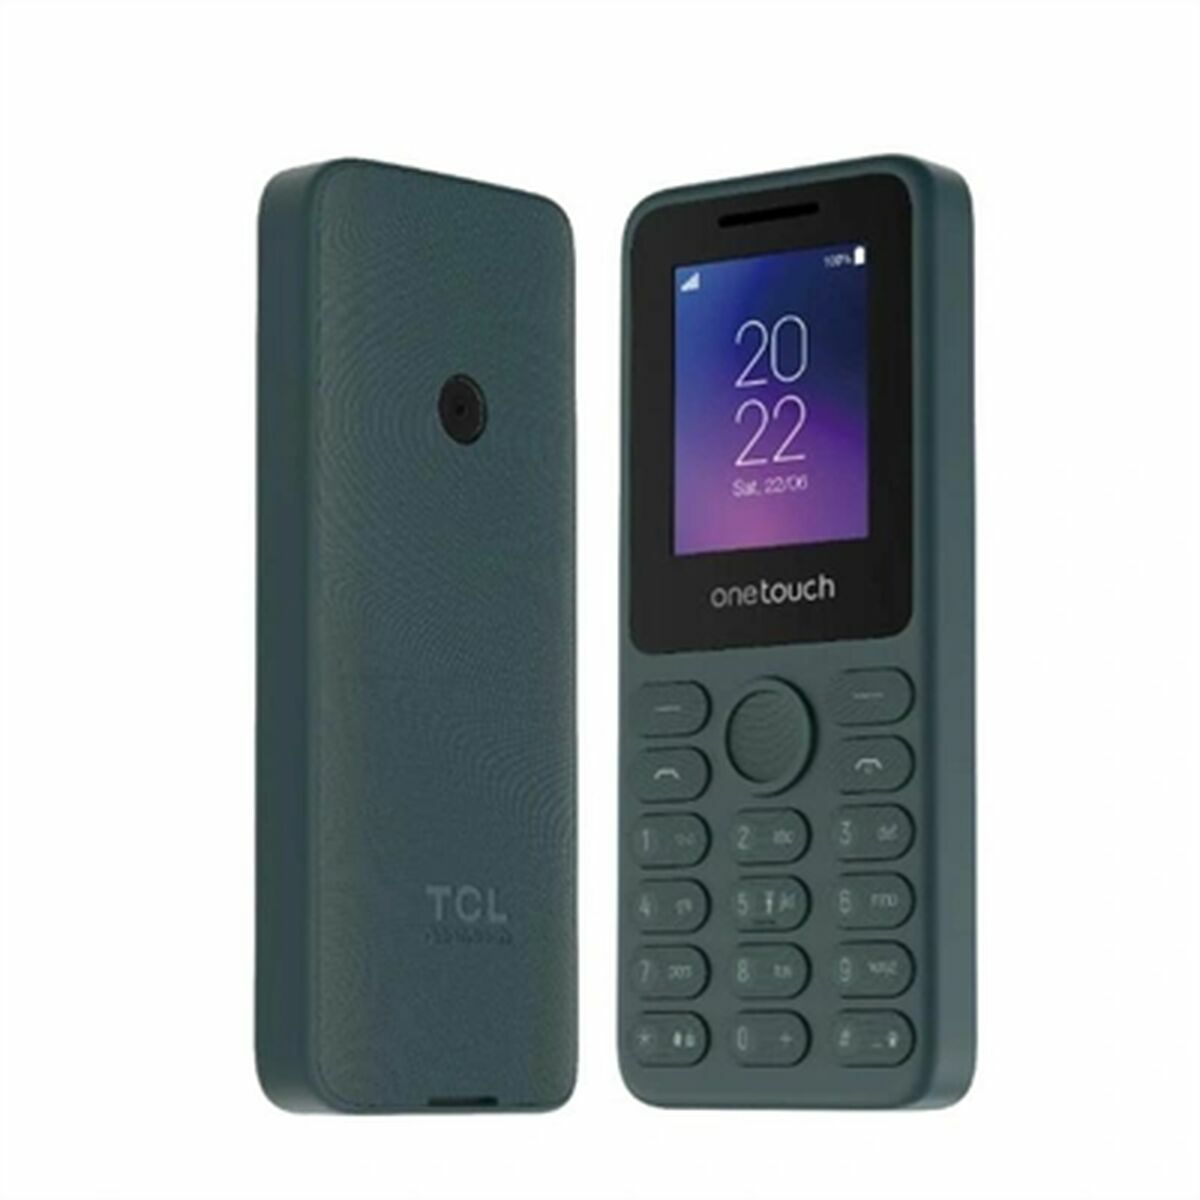 Mobiele Telefoon voor Bejaarden TCL T301P-3BLCA122-2 1,8" Grijs 4 GB RAM